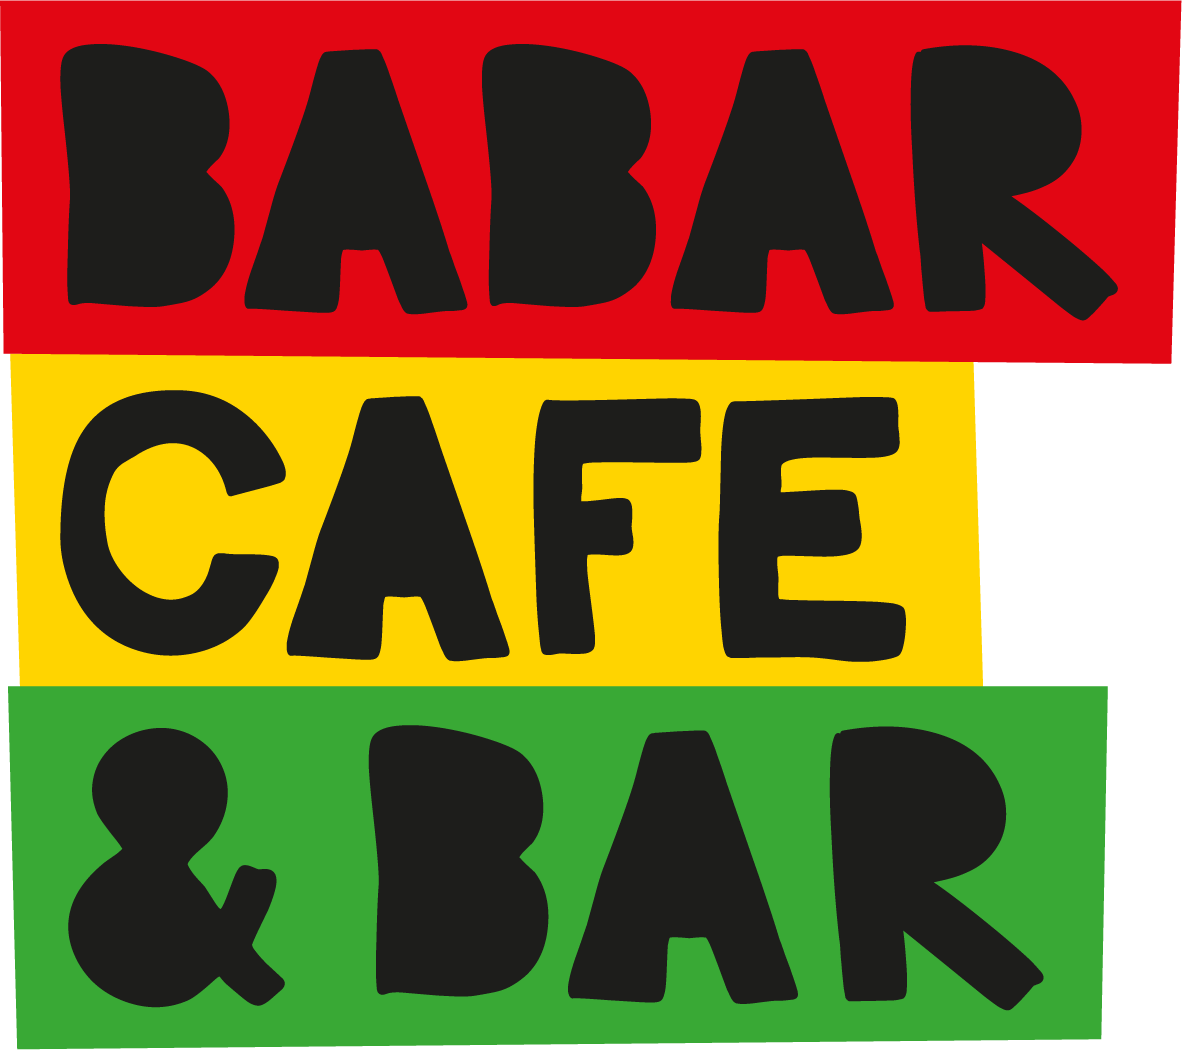 Babar Cafe-Bar, Hereford